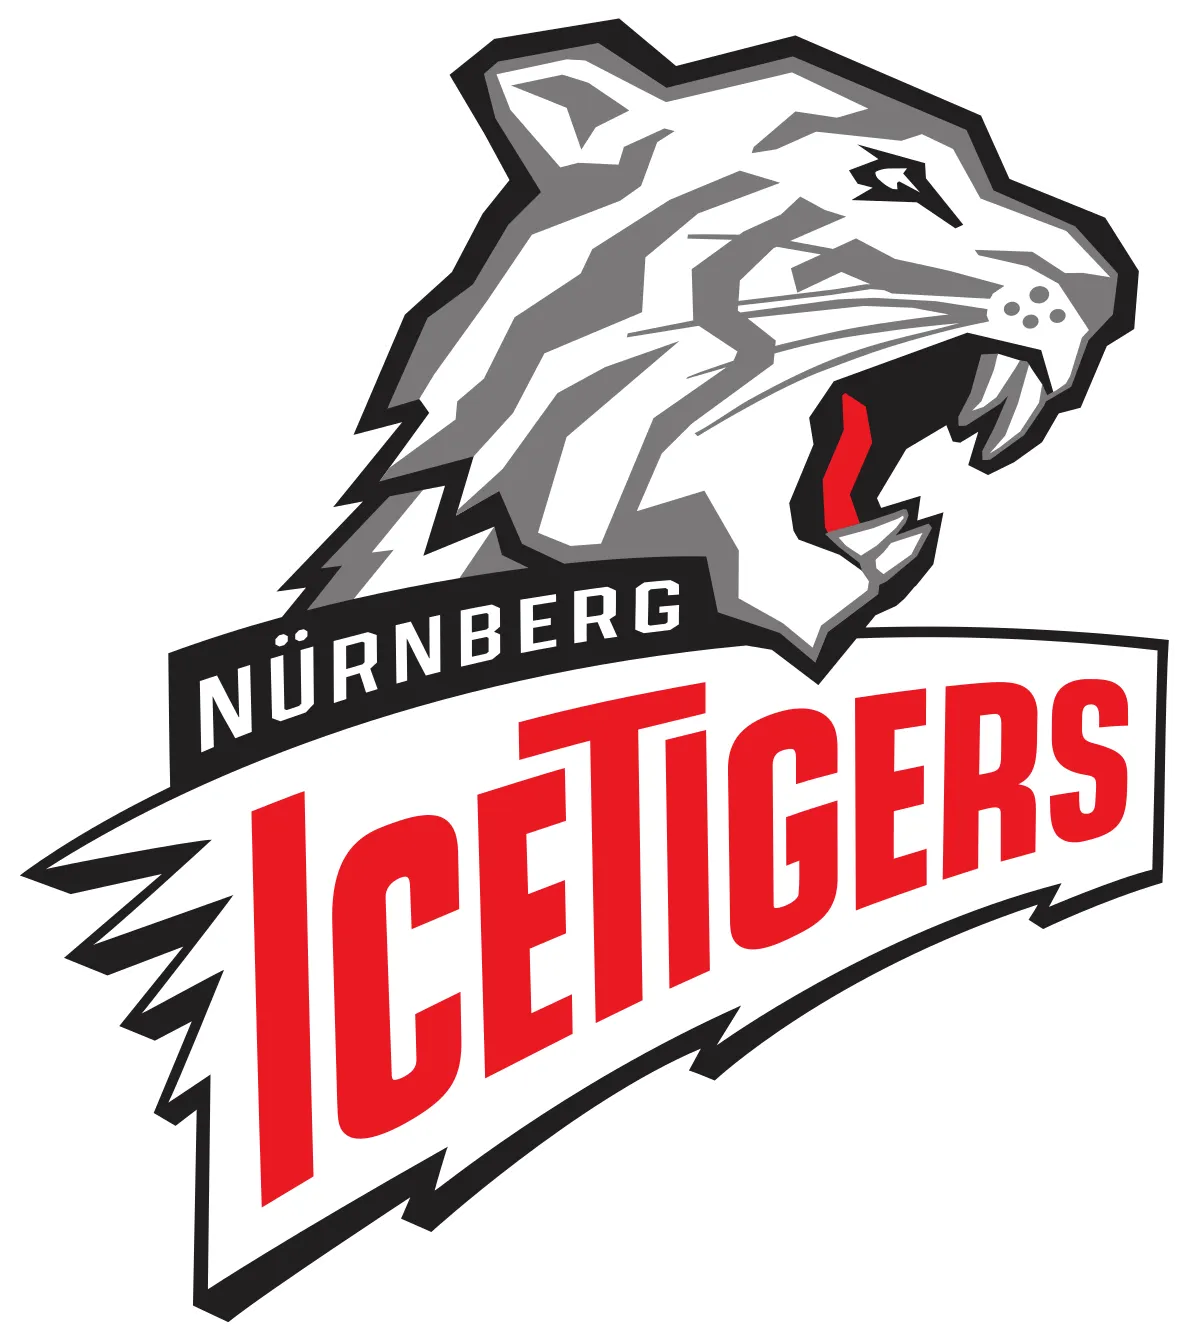  Nürnberg Ice Tigers